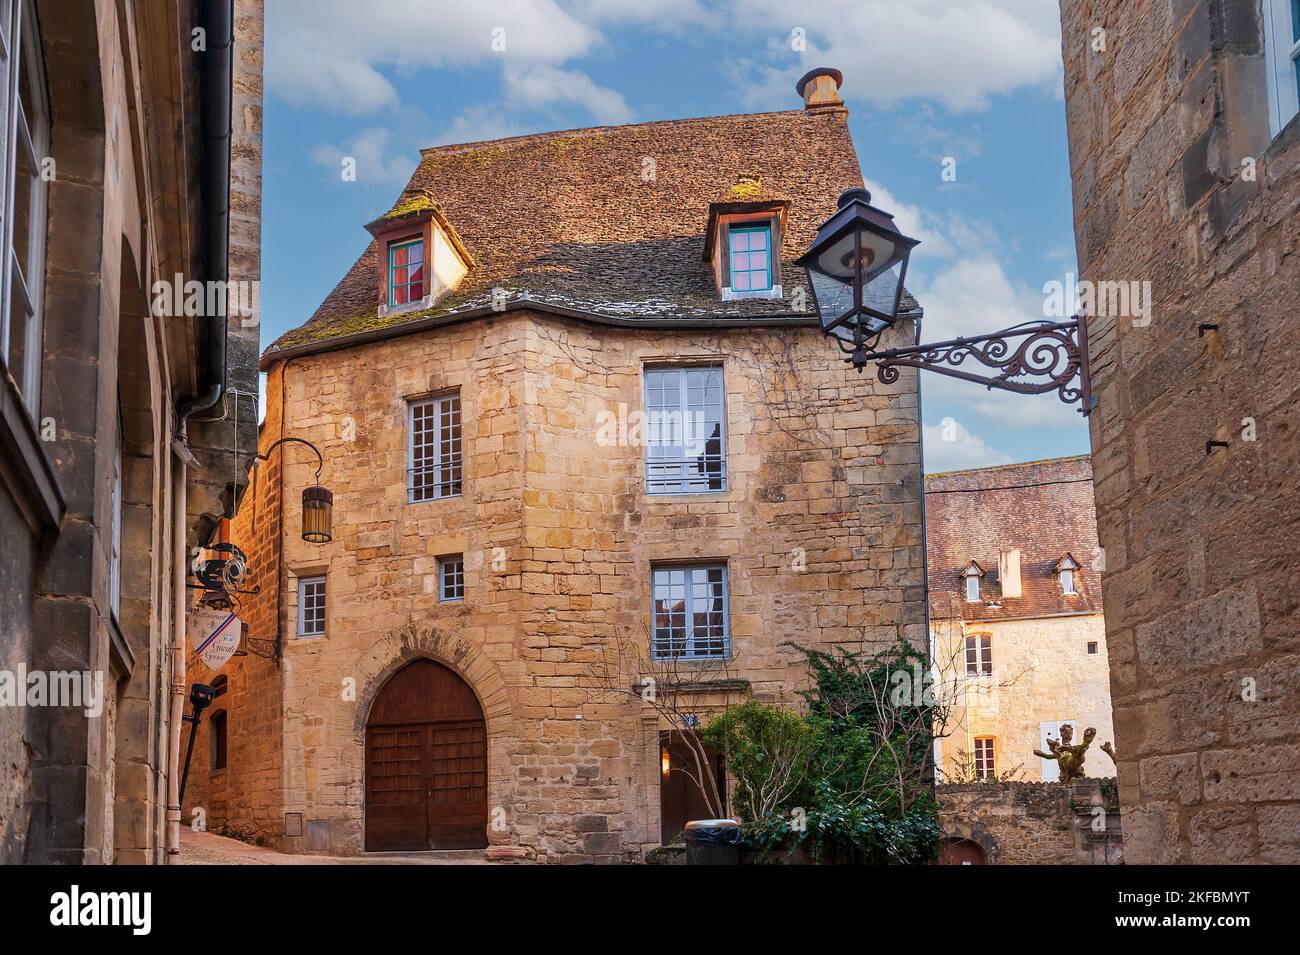 Façades représentatives de la ville de Sarlat la Caneda, en Périgord, Dordogne, Nouvelle-Aquitaine, France Banque D'Images